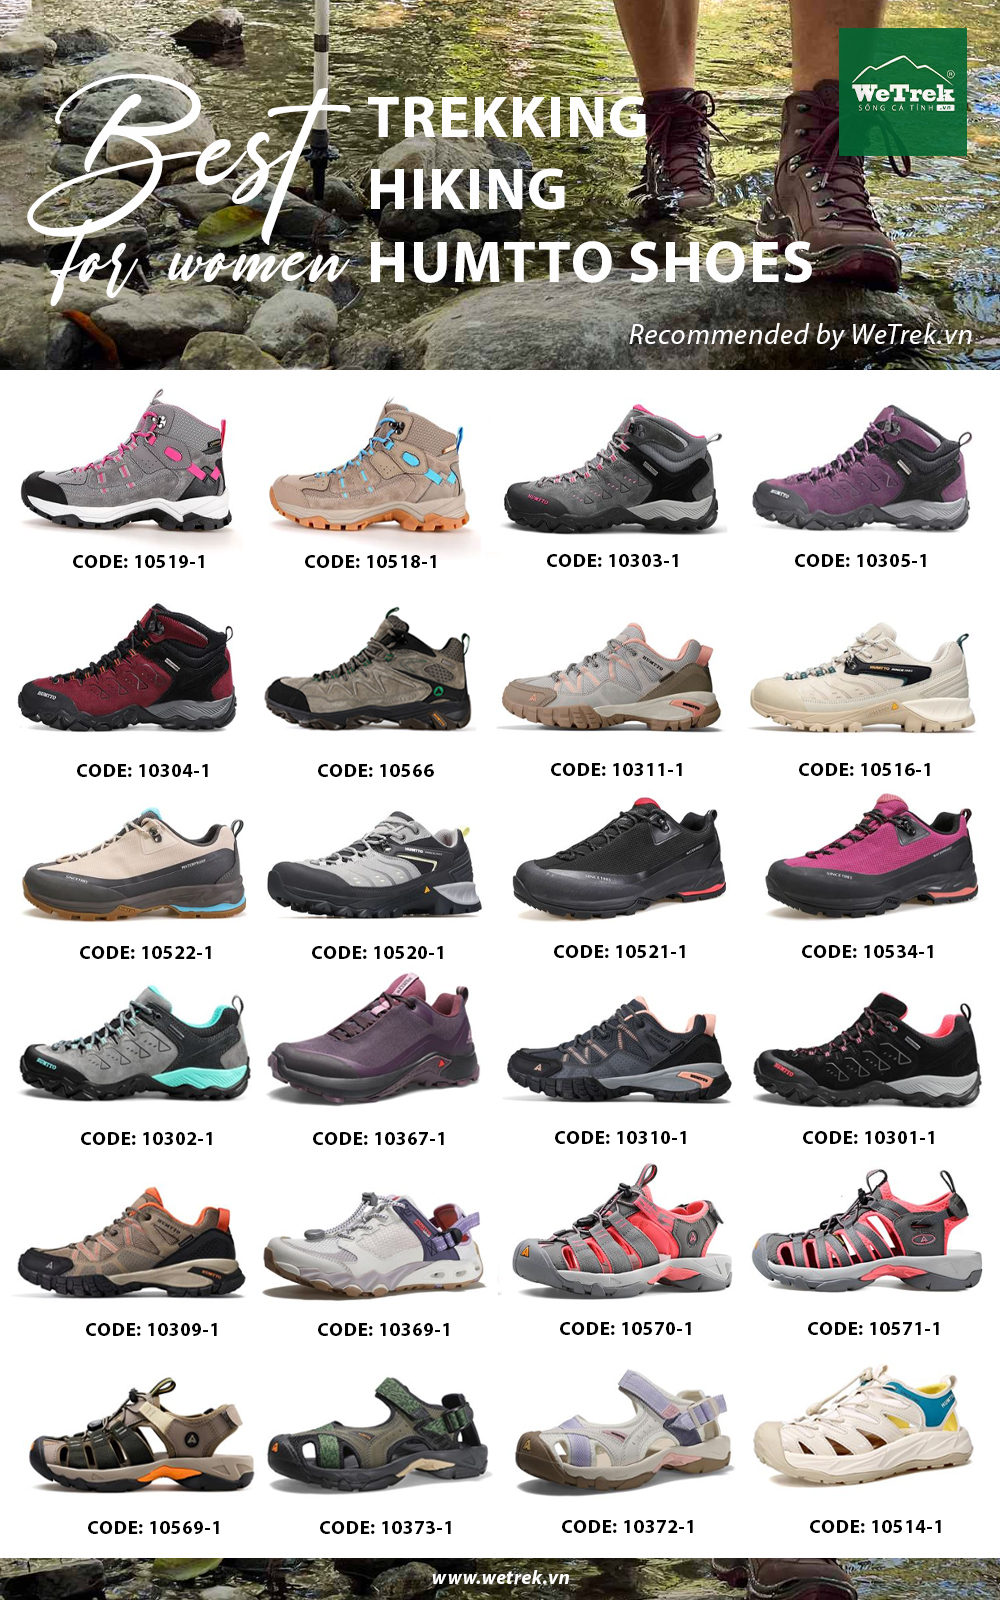 Tổng hợp các mẫu giày Humtto tại WeTrek.vn